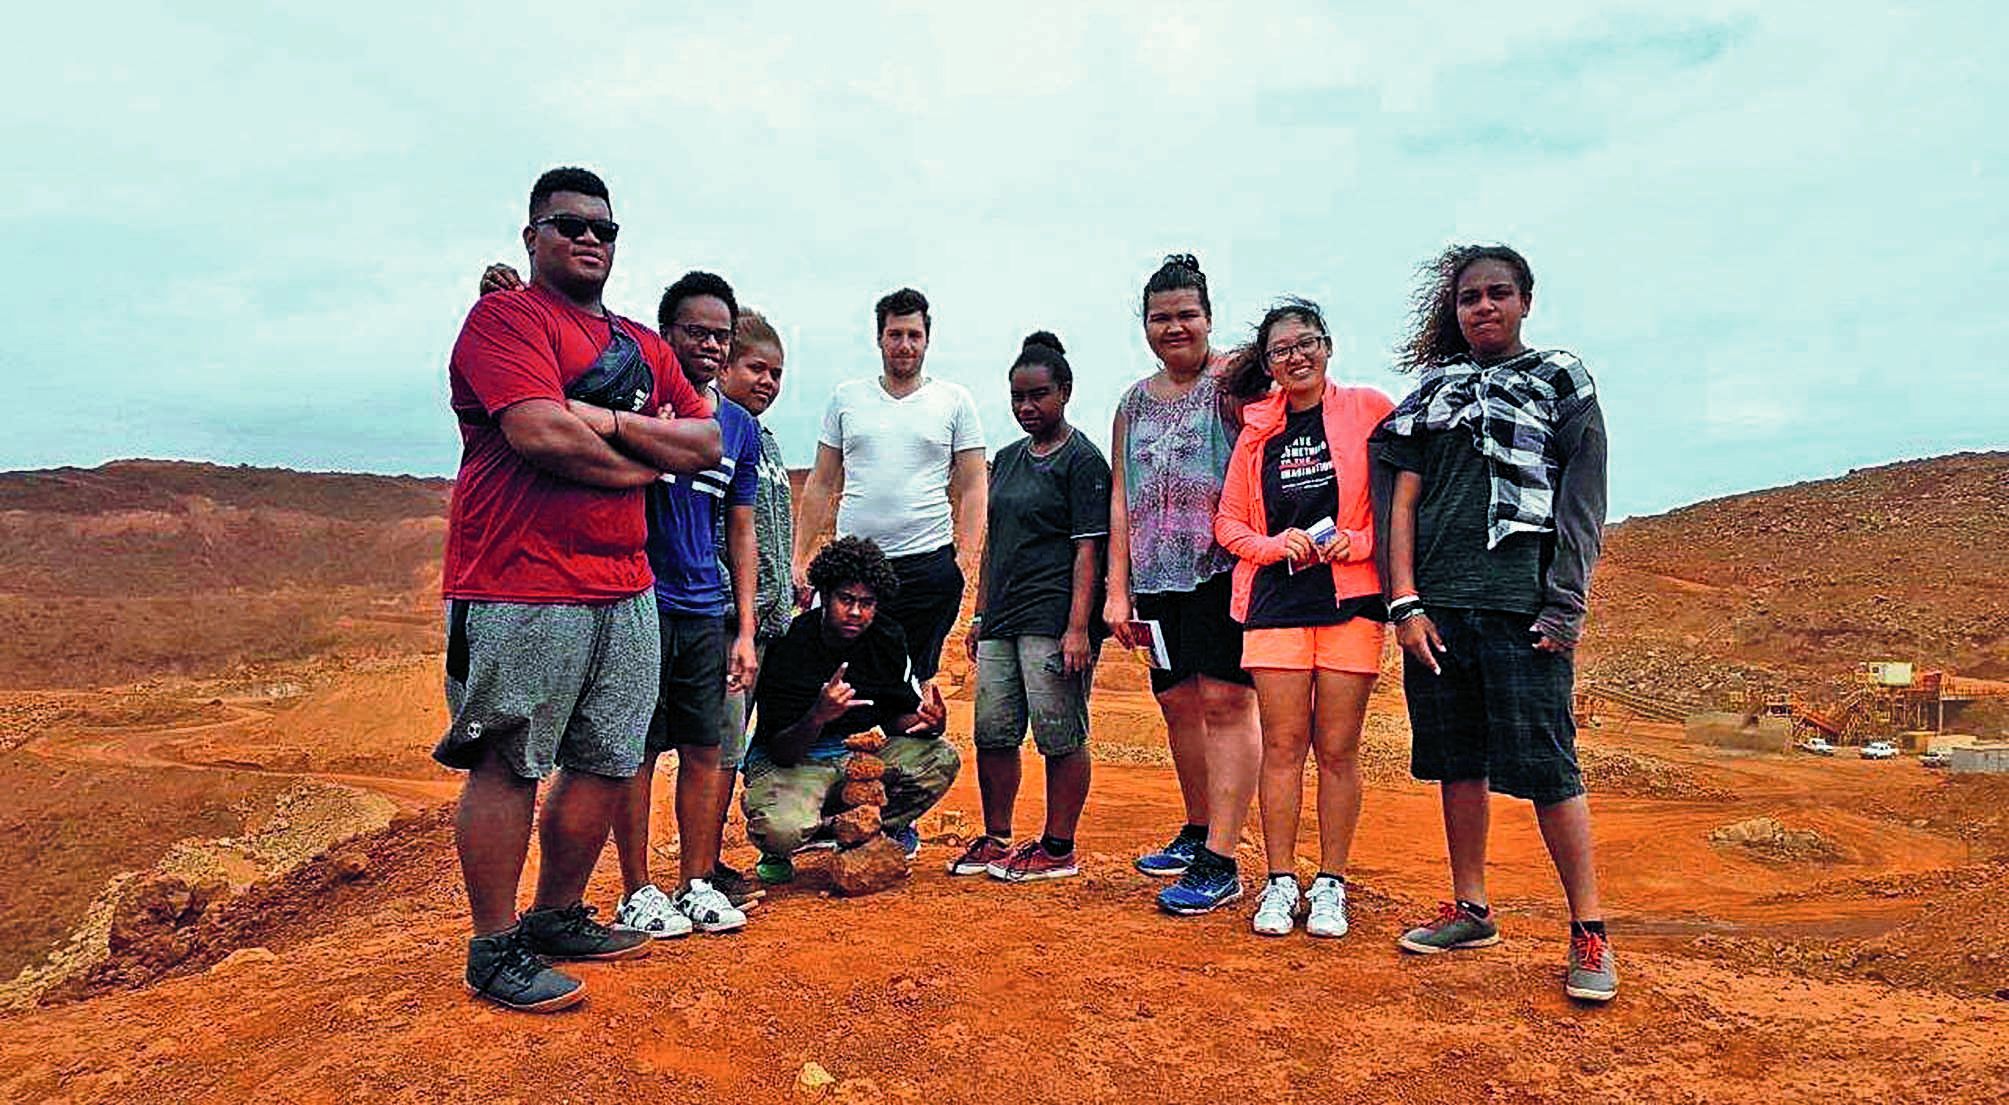 Echanges bilingues, baignade à la cascade de Ciu, visite d’un site minier et découverte de la vie en tribu étaient au menu des élèves fidjiens accueillis au collège de Canala. Le séjour s’est achevé à Nouméa par des activités de plein air mais aussi la vi